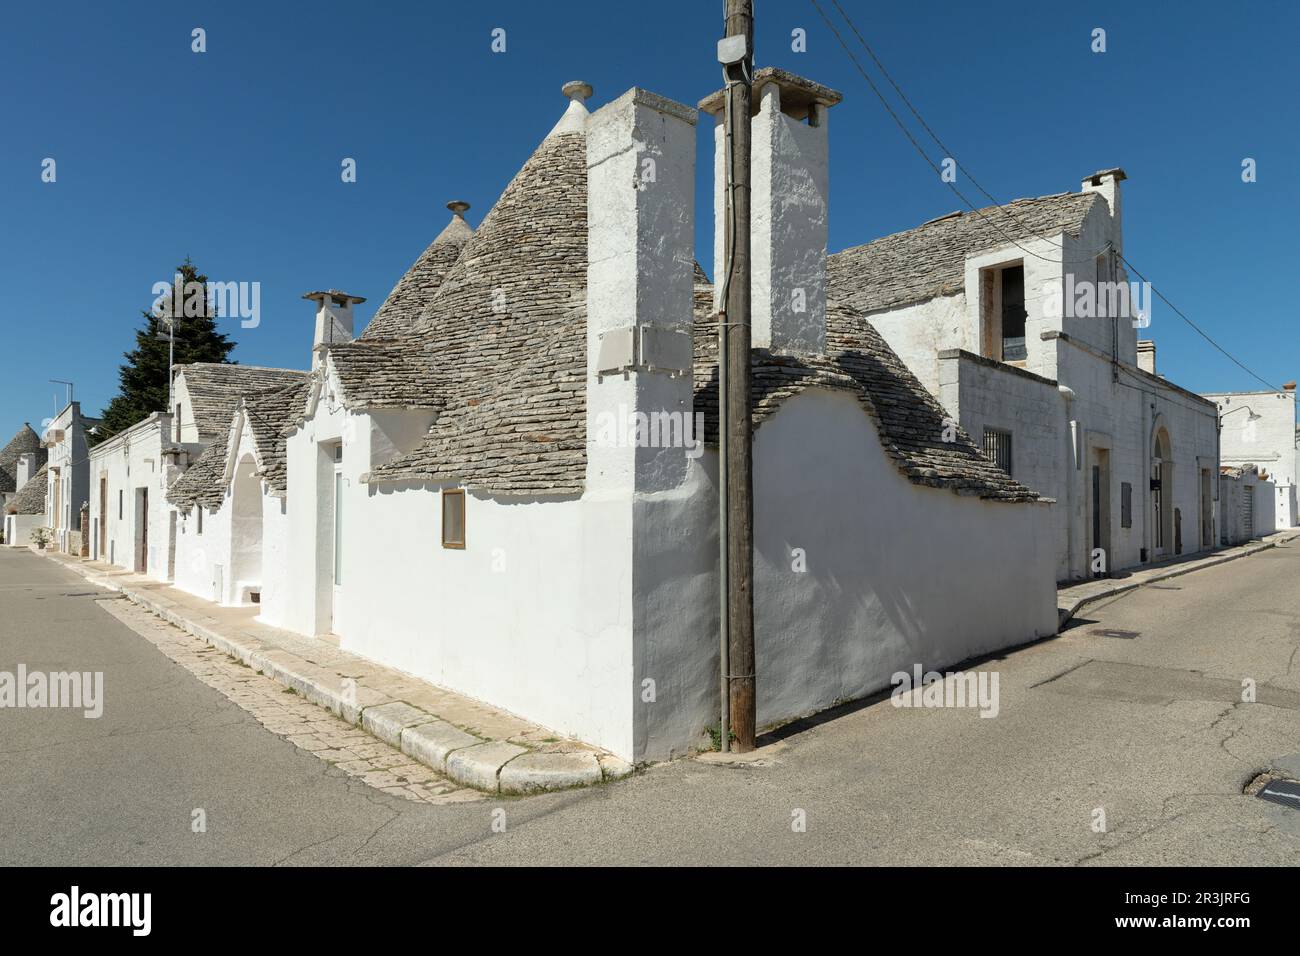 Typical trulli houses in Alberobello, Apulia, Italy Stock Photo